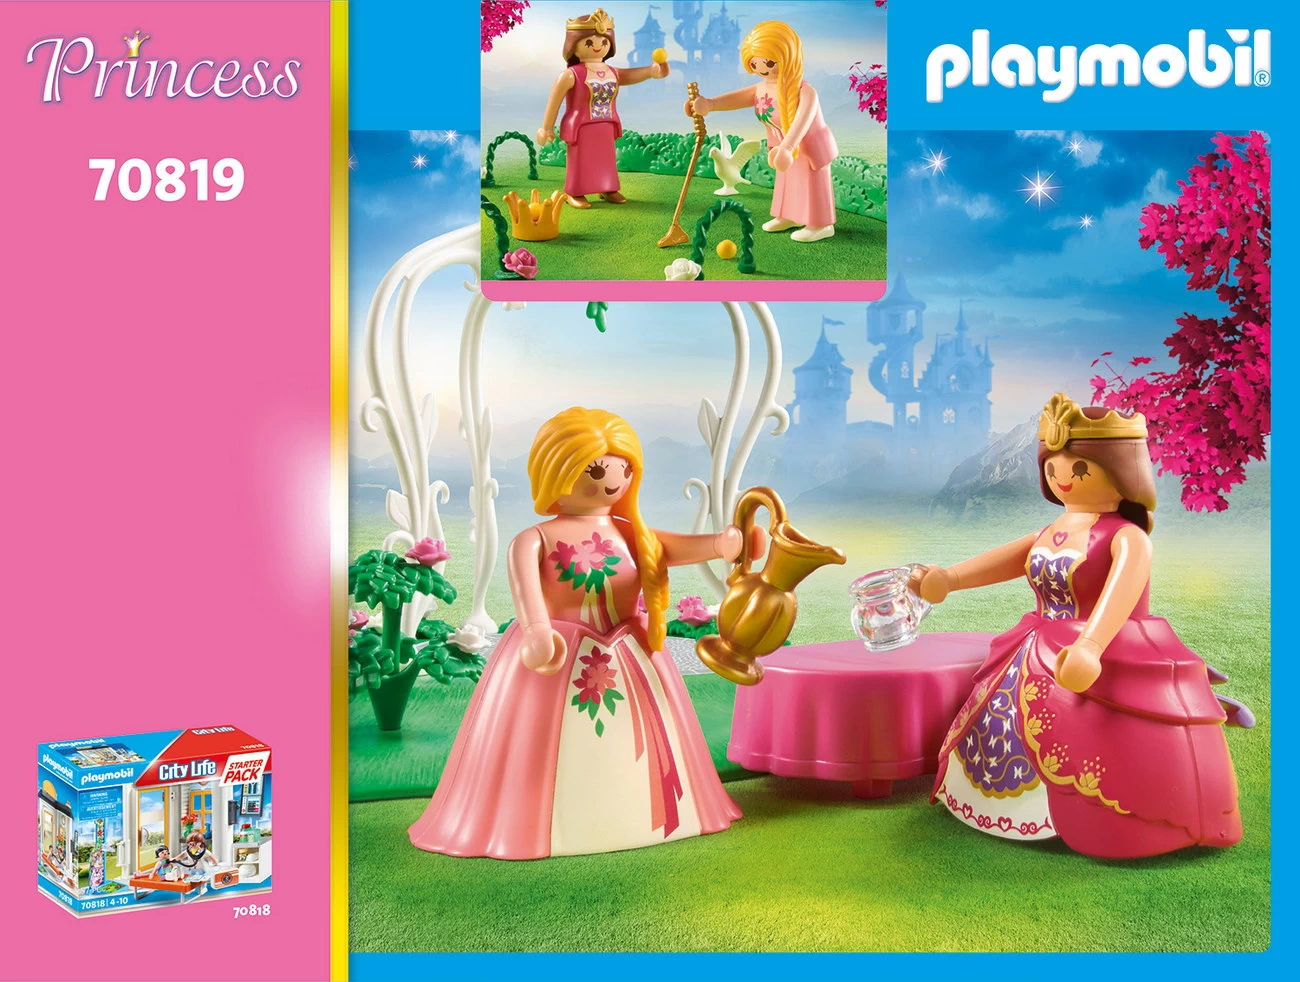 Playmobil 70819 - StarterPack Prinzessinnengarten (Princess)